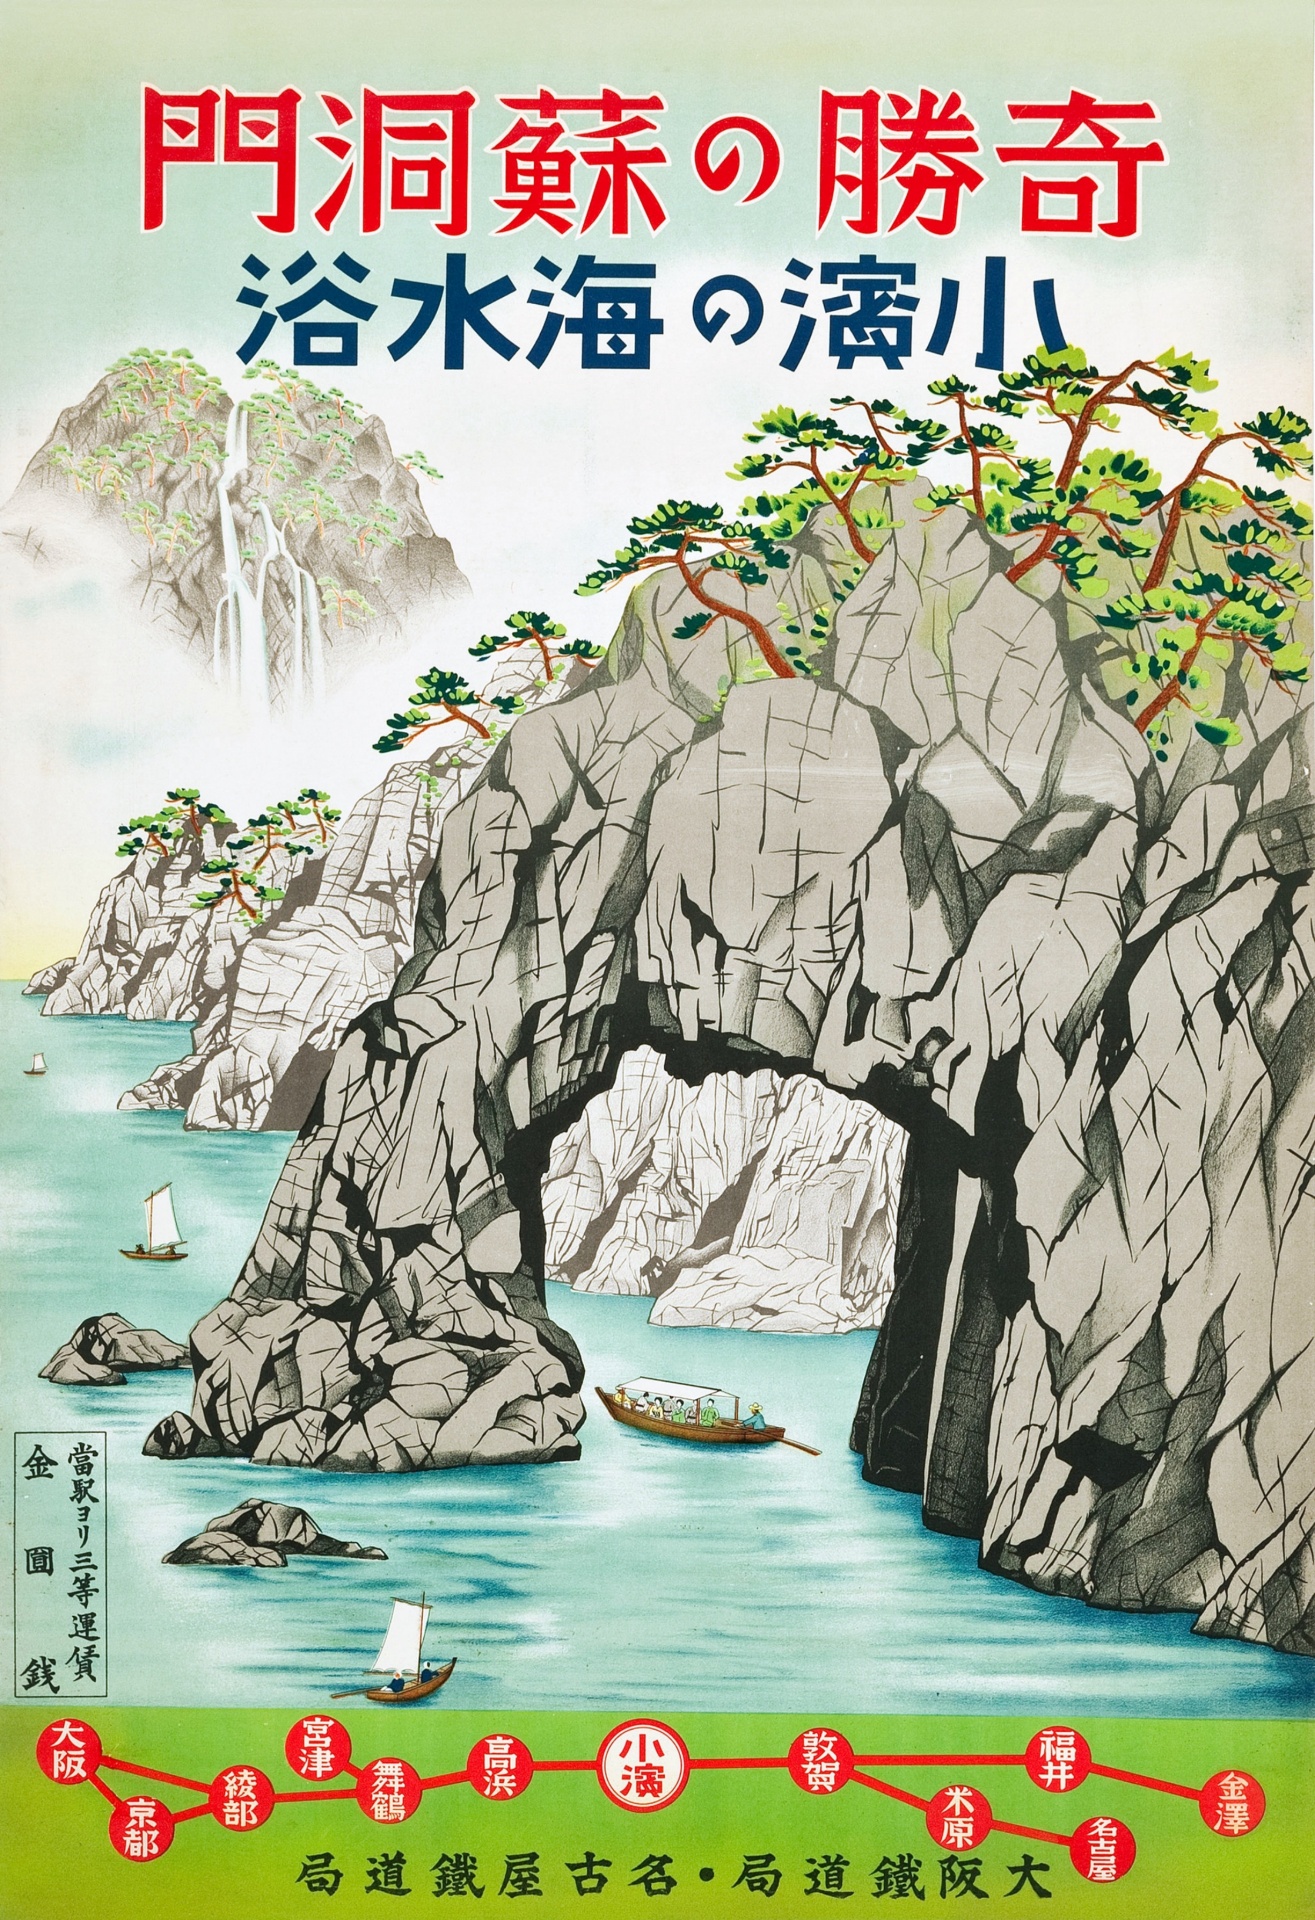 Japan Vintage Travel Poster Art